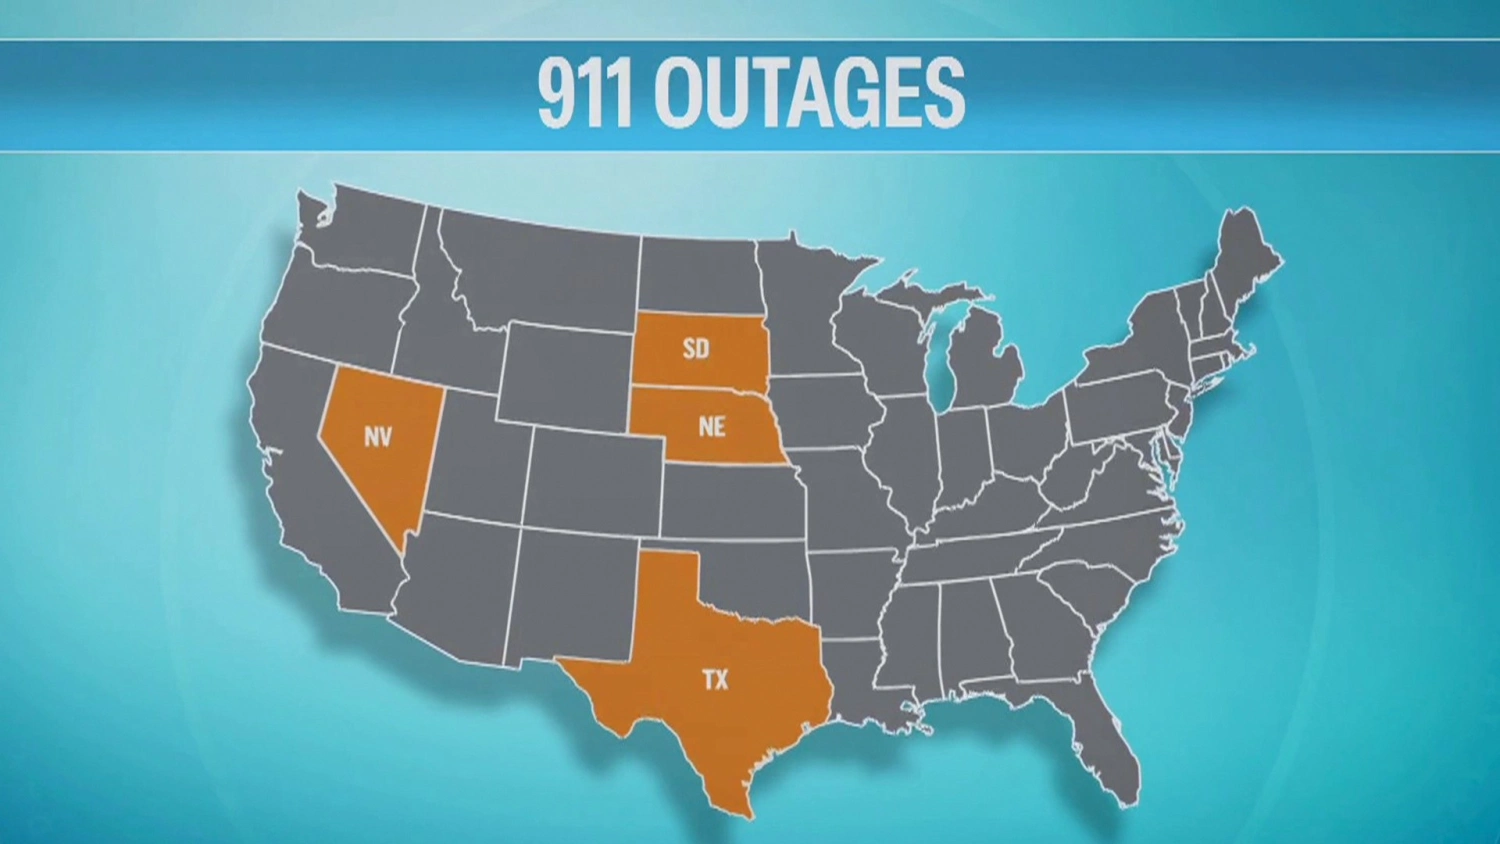 Μεγάλες διακοπές λειτουργίας 911 άφησαν εκατομμύρια αποκλεισμένους κατά τη διάρκεια έκτακτης ανάγκης